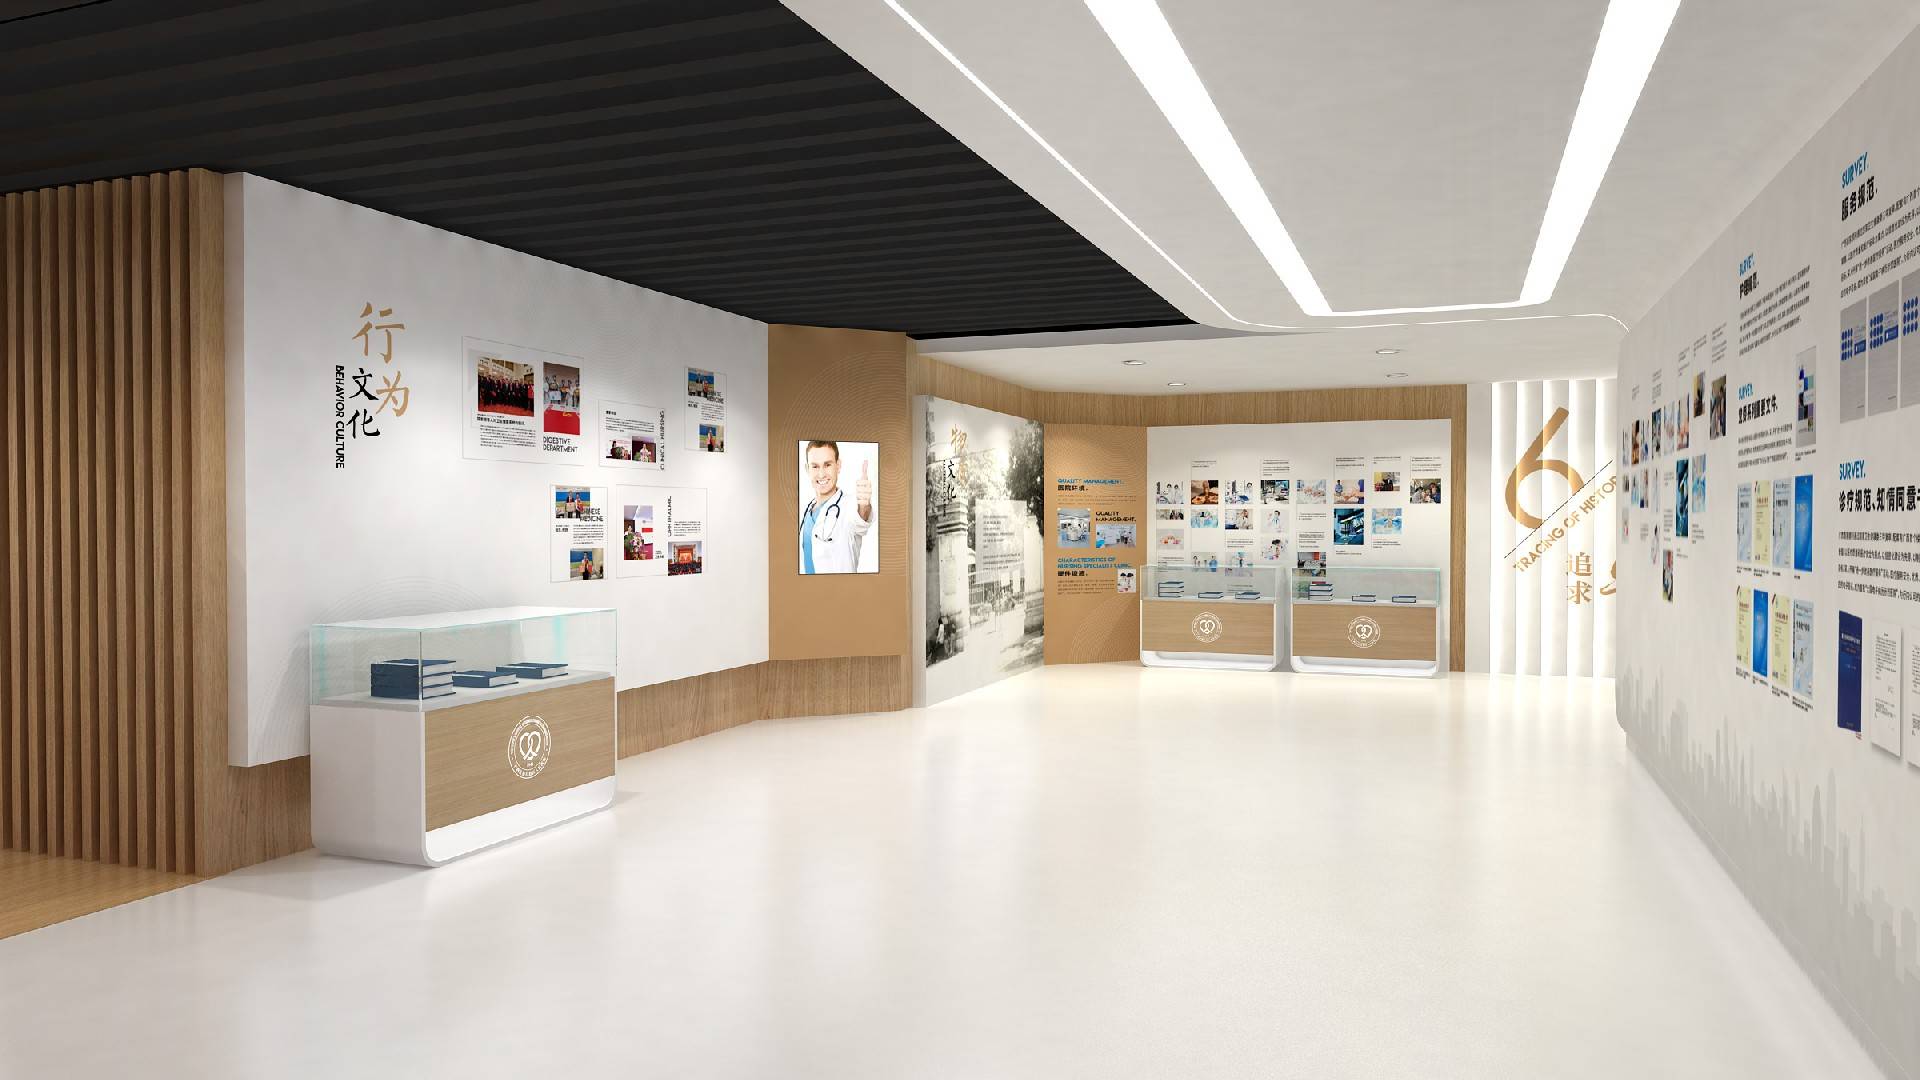 这是一个现代风格的展览厅内部，墙上挂着海报和文字介绍，地面宽敞明亮，设计简洁，色调以白色和木色为主。